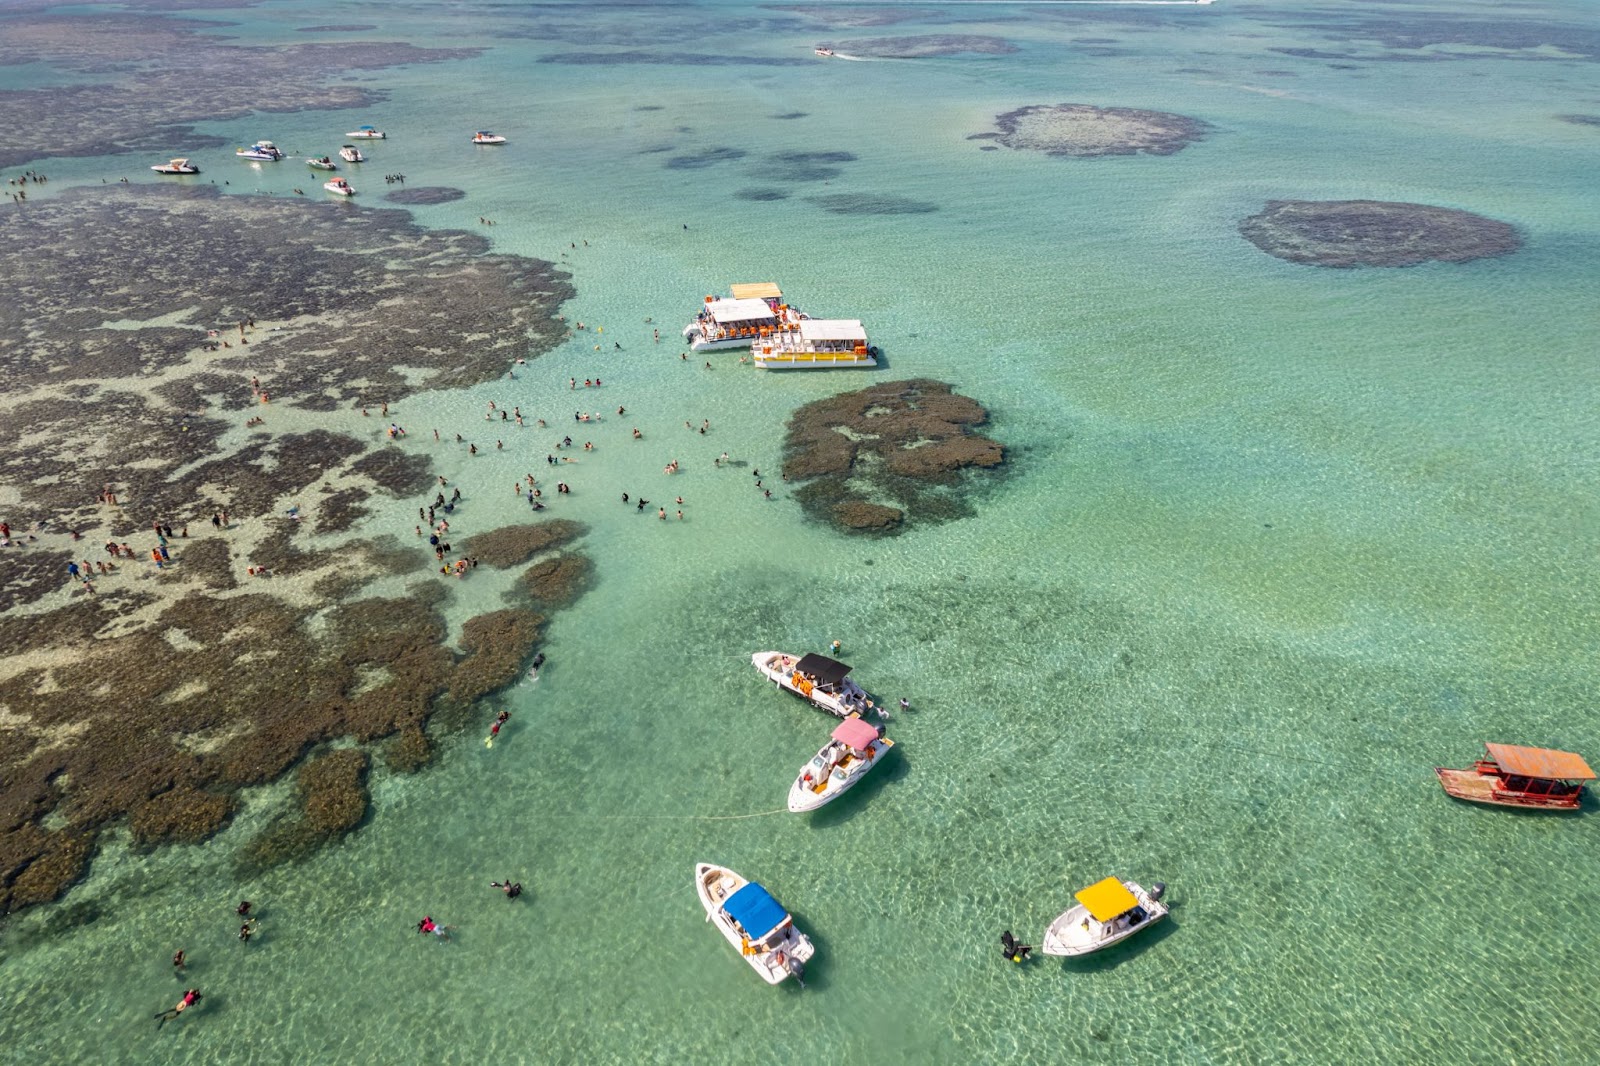 Vista aérea das Galés de Maragogi. Os banhistas caminham pelos bancos de areia e arrecifes de corais escuros, entre grandes áreas de água cristalina. Pequenas embarcações de passeio flutuam no mar.